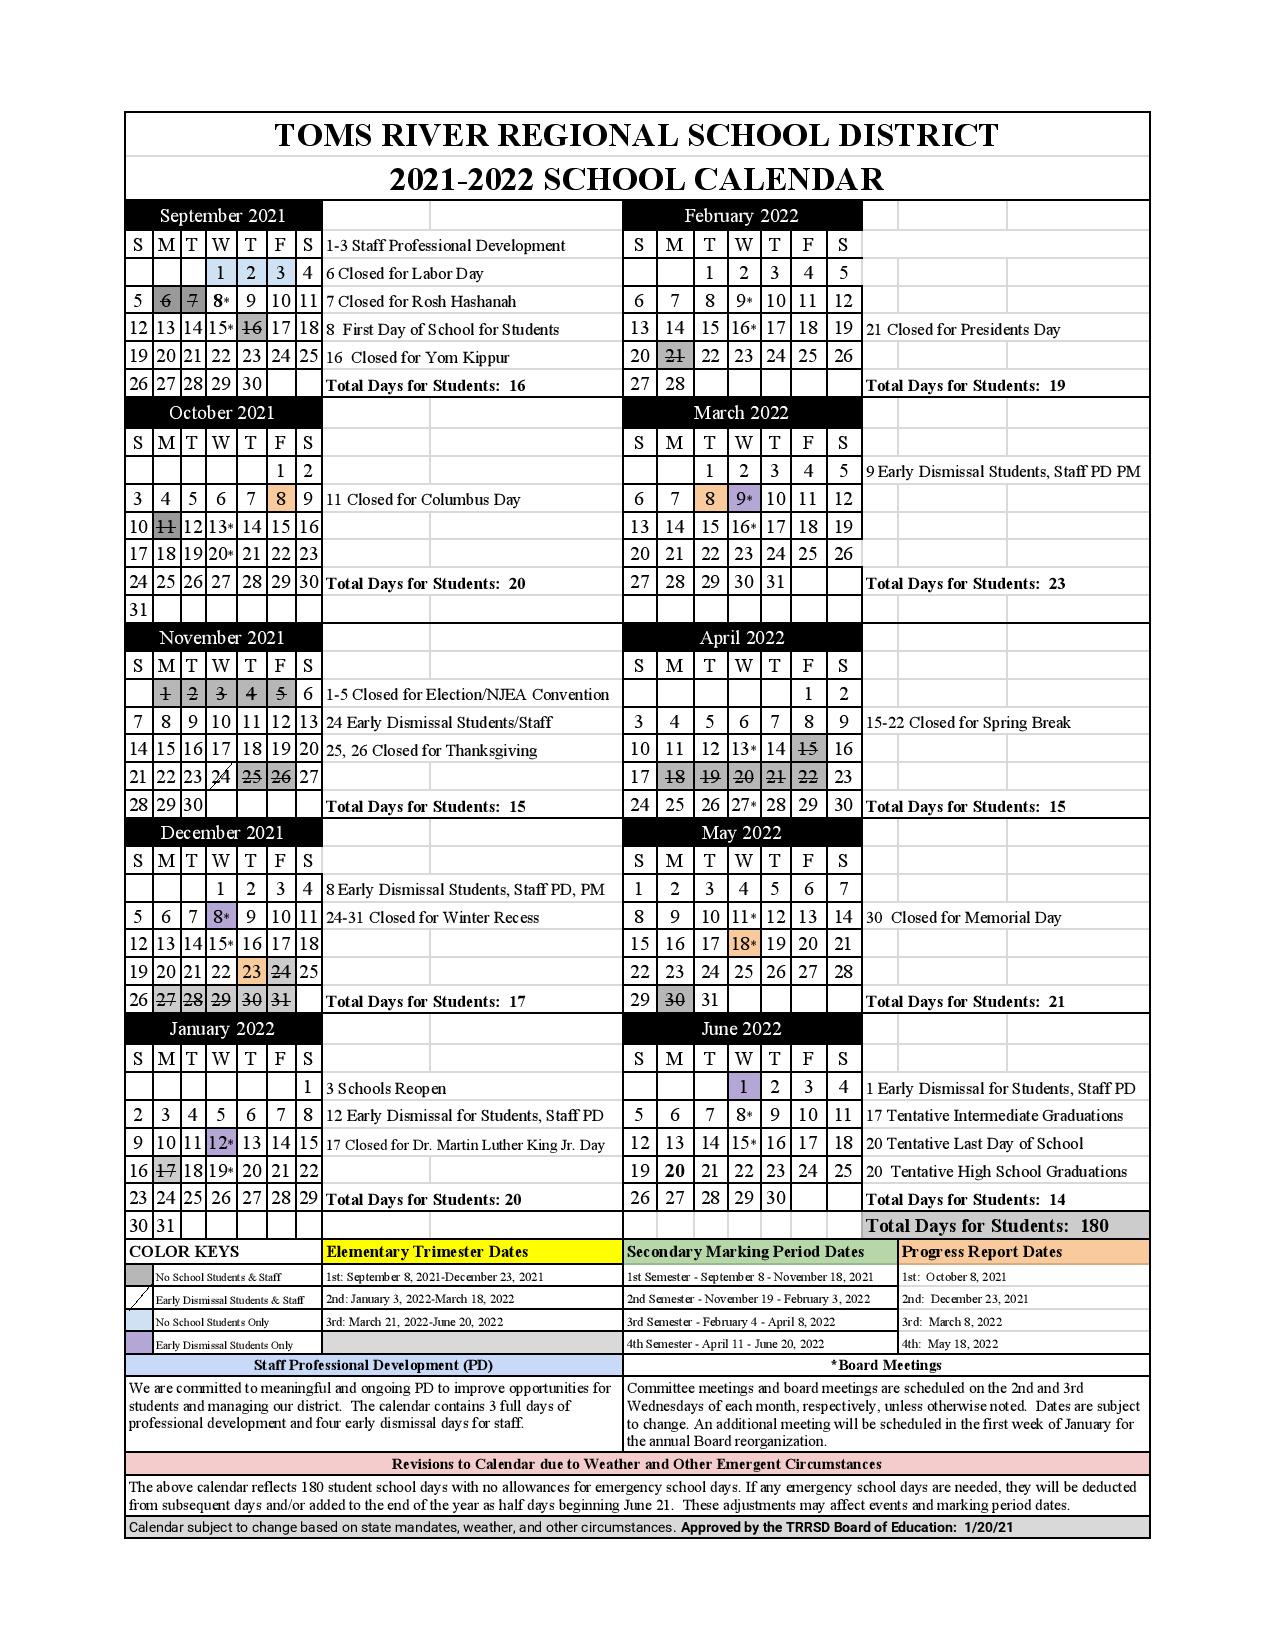 Toms River Regional Schools 2022 2023 Calendar July 2022